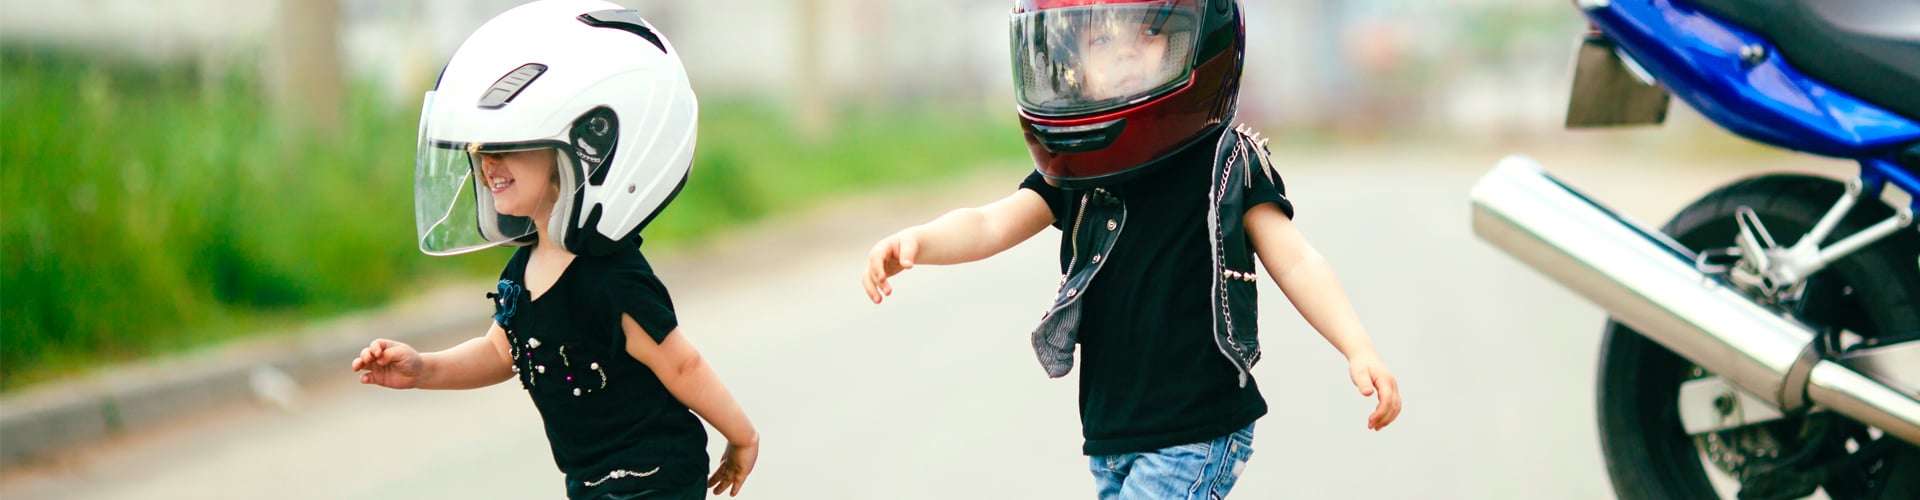 Bottes moto pour enfants - grand choix